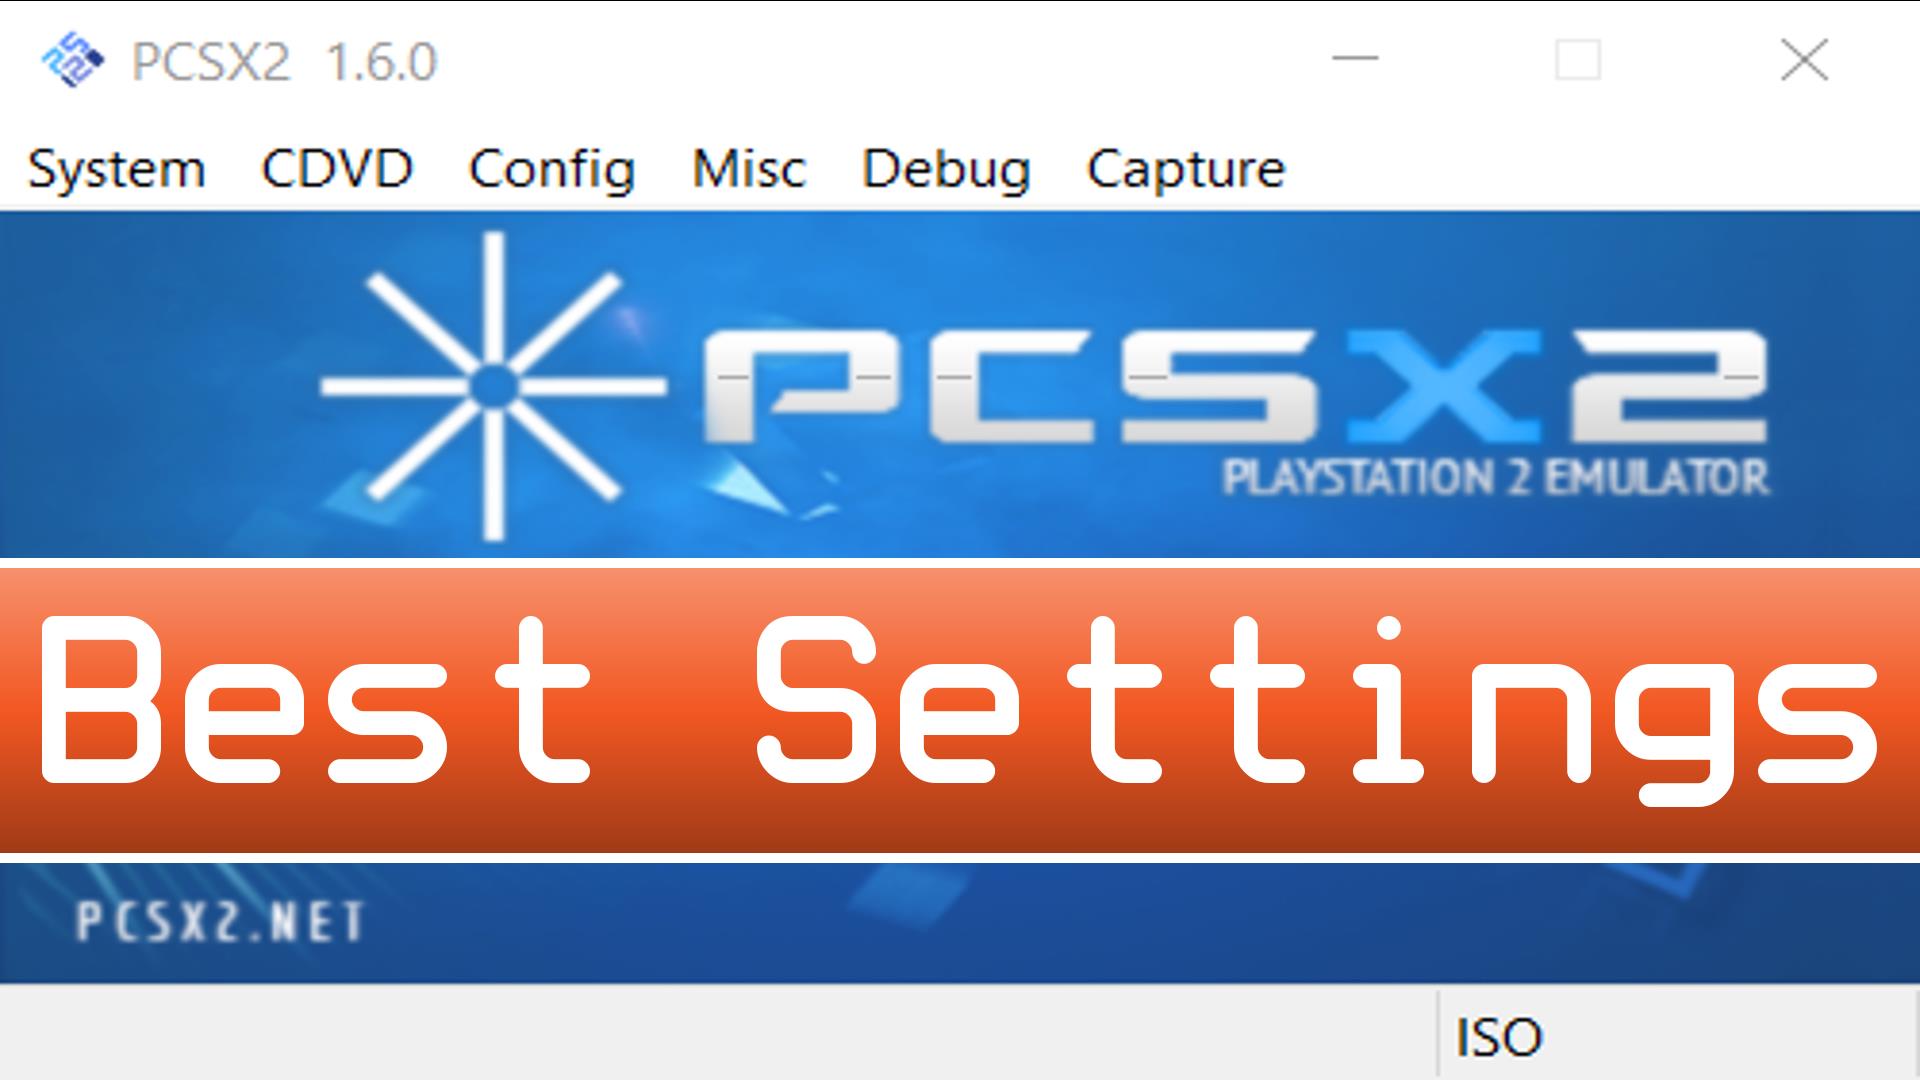 PCSX2 Best Settings - God of War 2